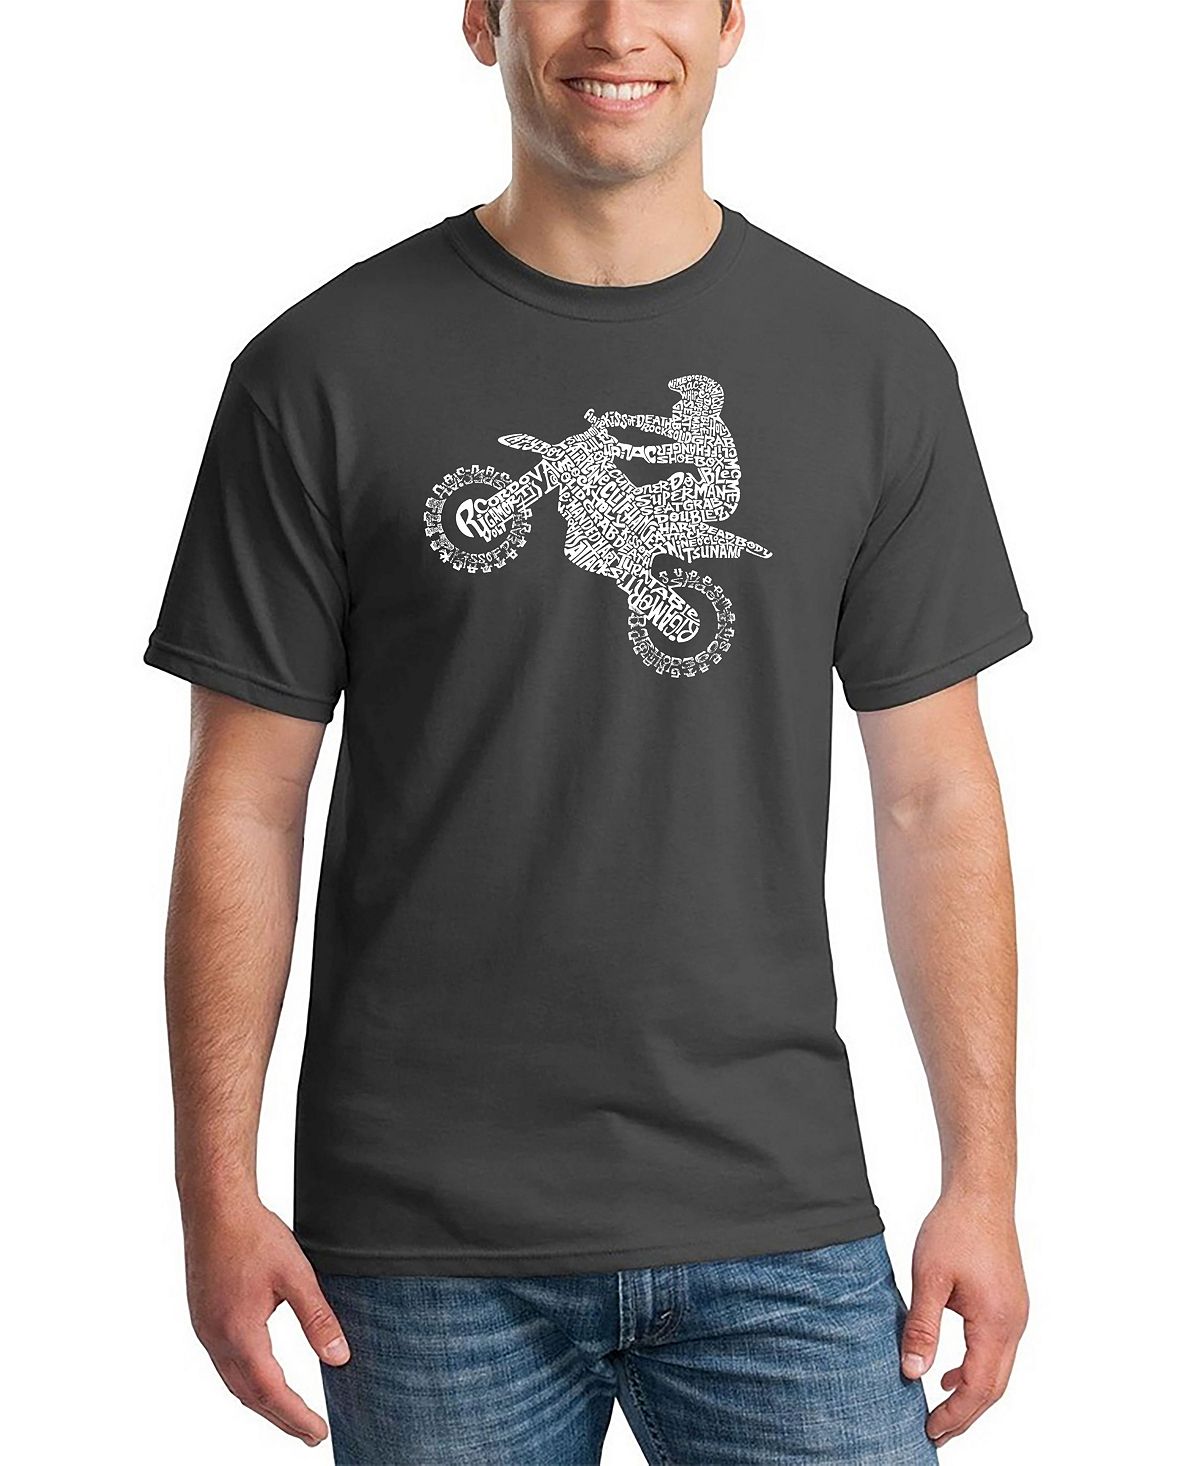 Мужской фристайл-мотокросс - футболка fmx word art LA Pop Art, серый